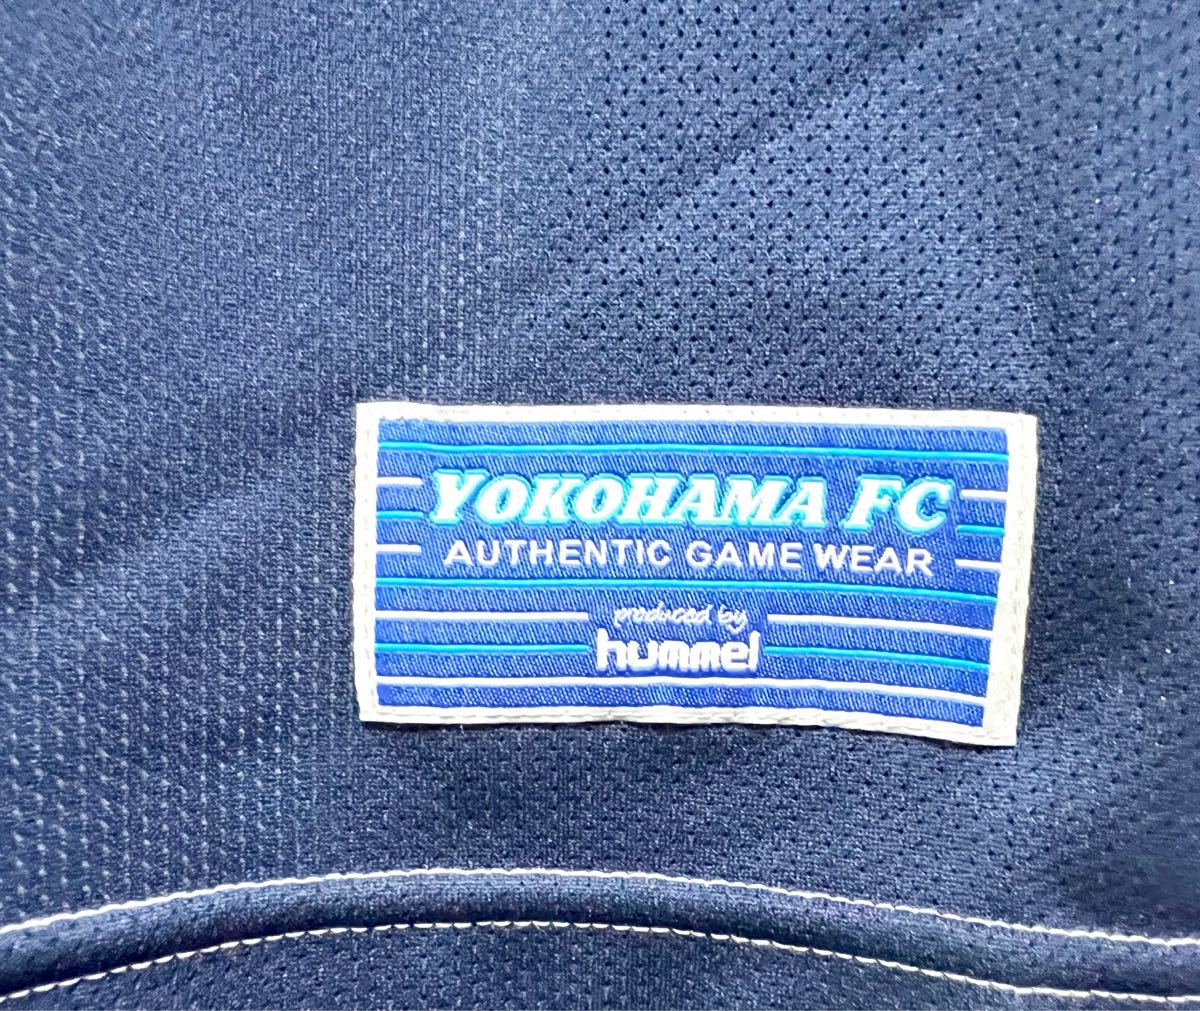 横浜FC 2013 半袖 アウェイ #オーセンティックユニホーム XO ホワイト　55 YOKOHAMA